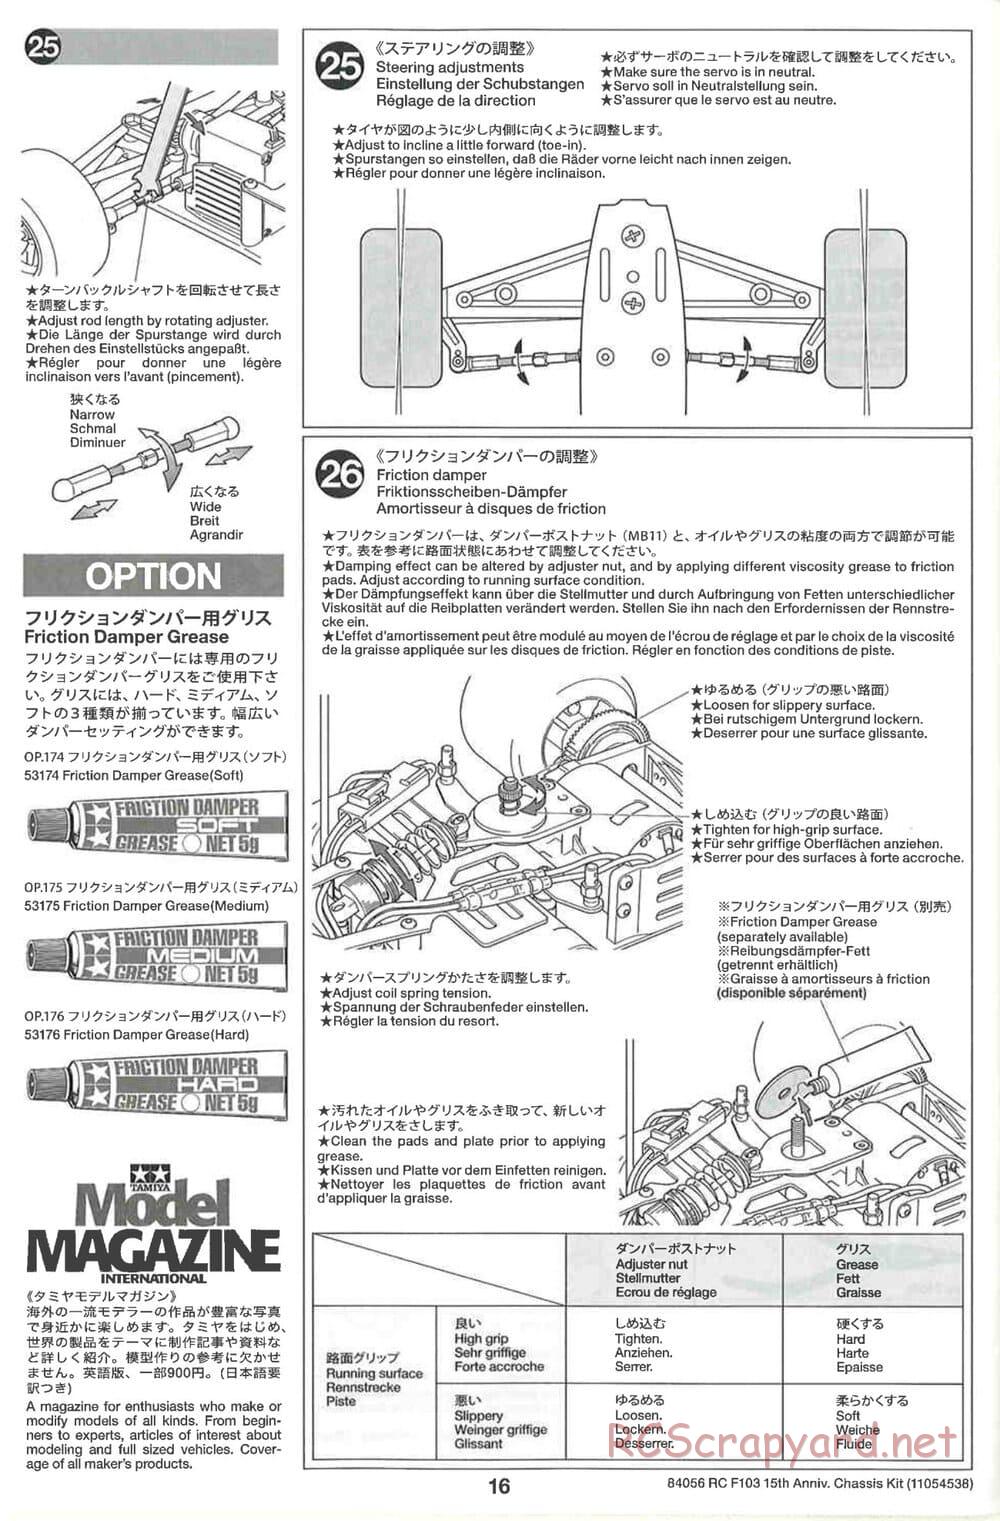 Tamiya - F103 15th Anniversary Chassis - Manual - Page 16